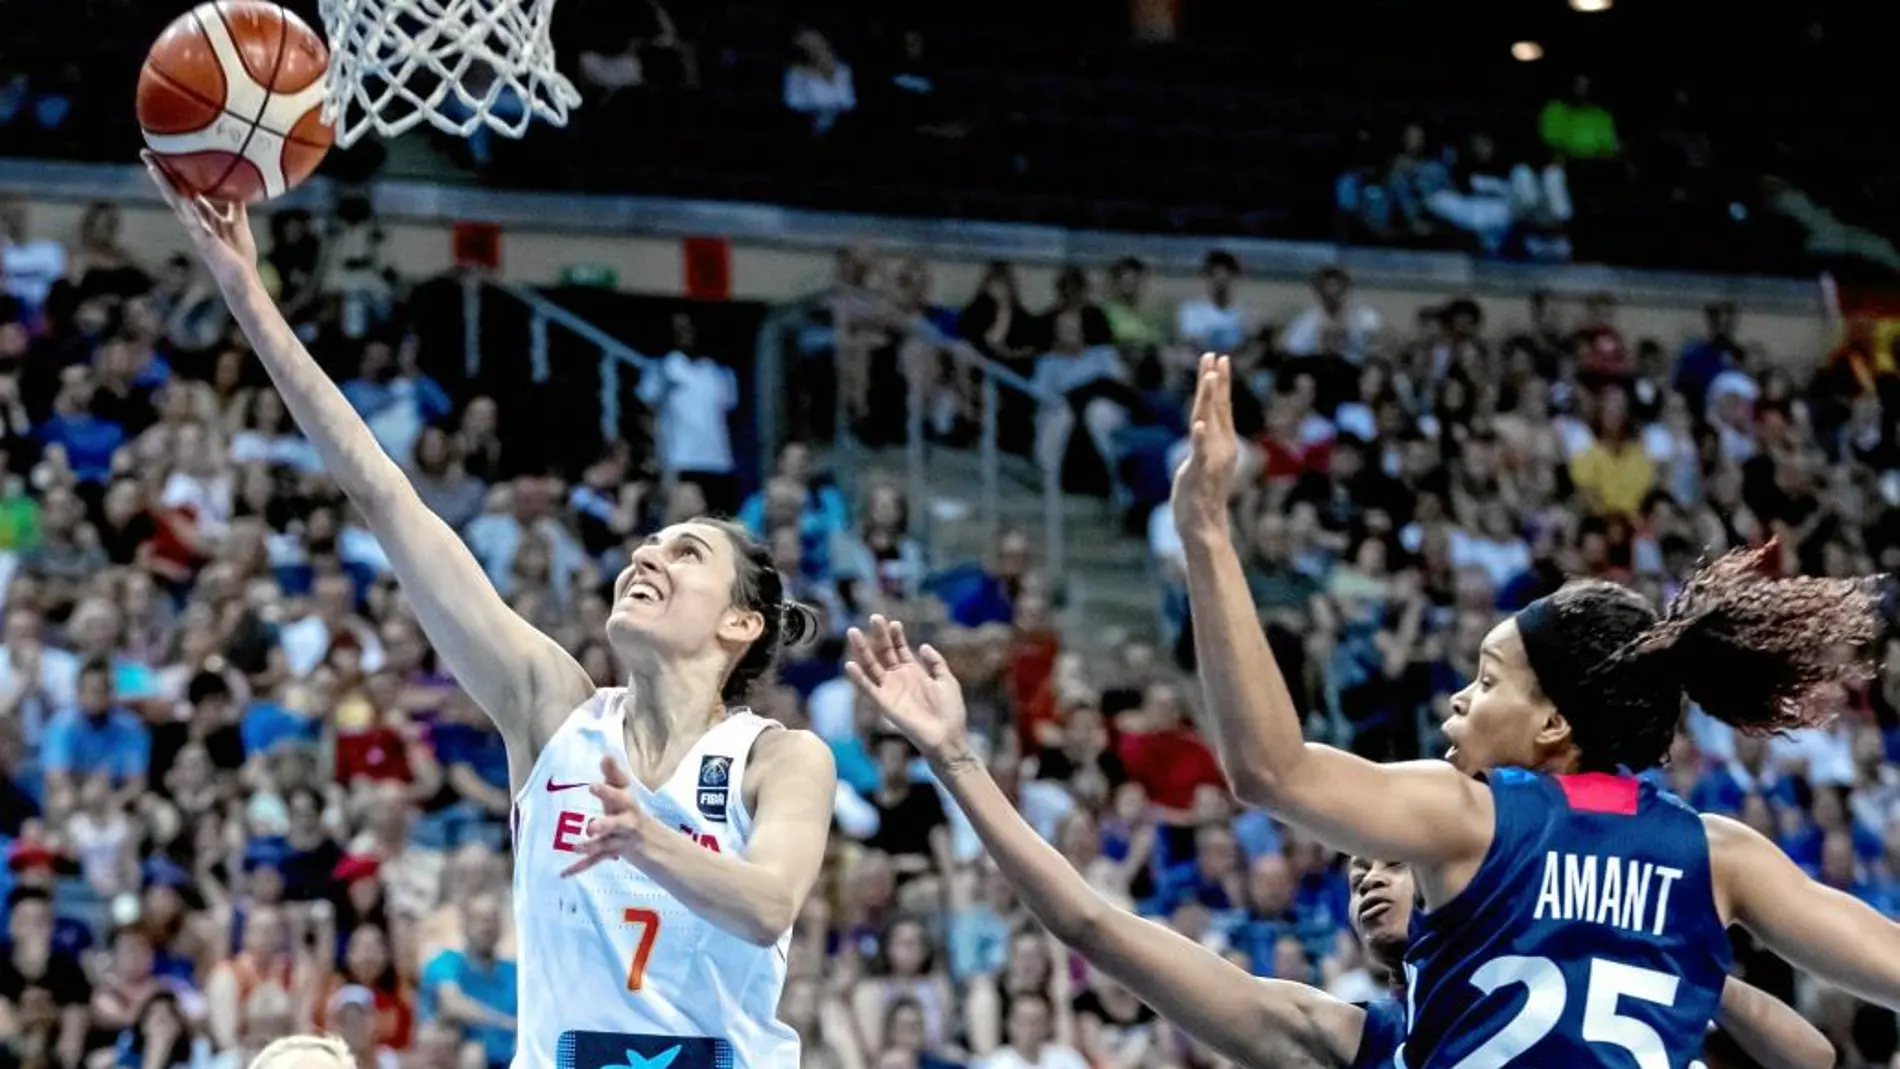 Alba Torrens, la MVP del torneo, anotó 18 puntos en la final ante Francia